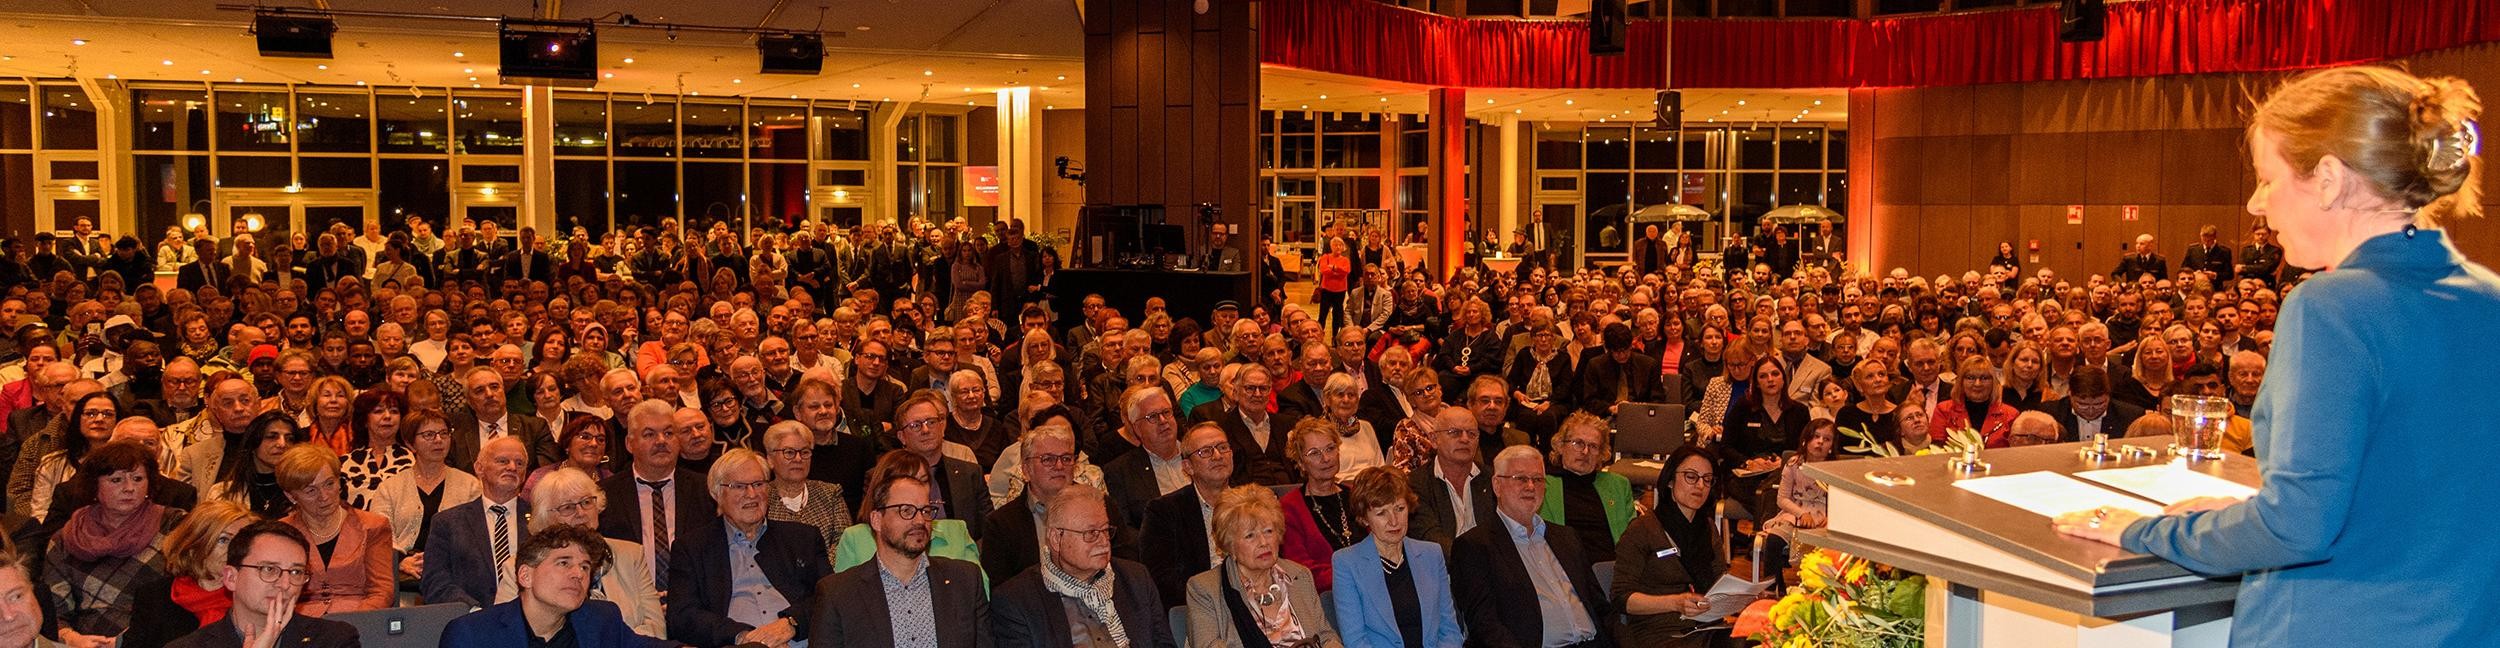 Publikum und Bühne mit OB Müller beim Neujahrsempfang in der Badner Halle